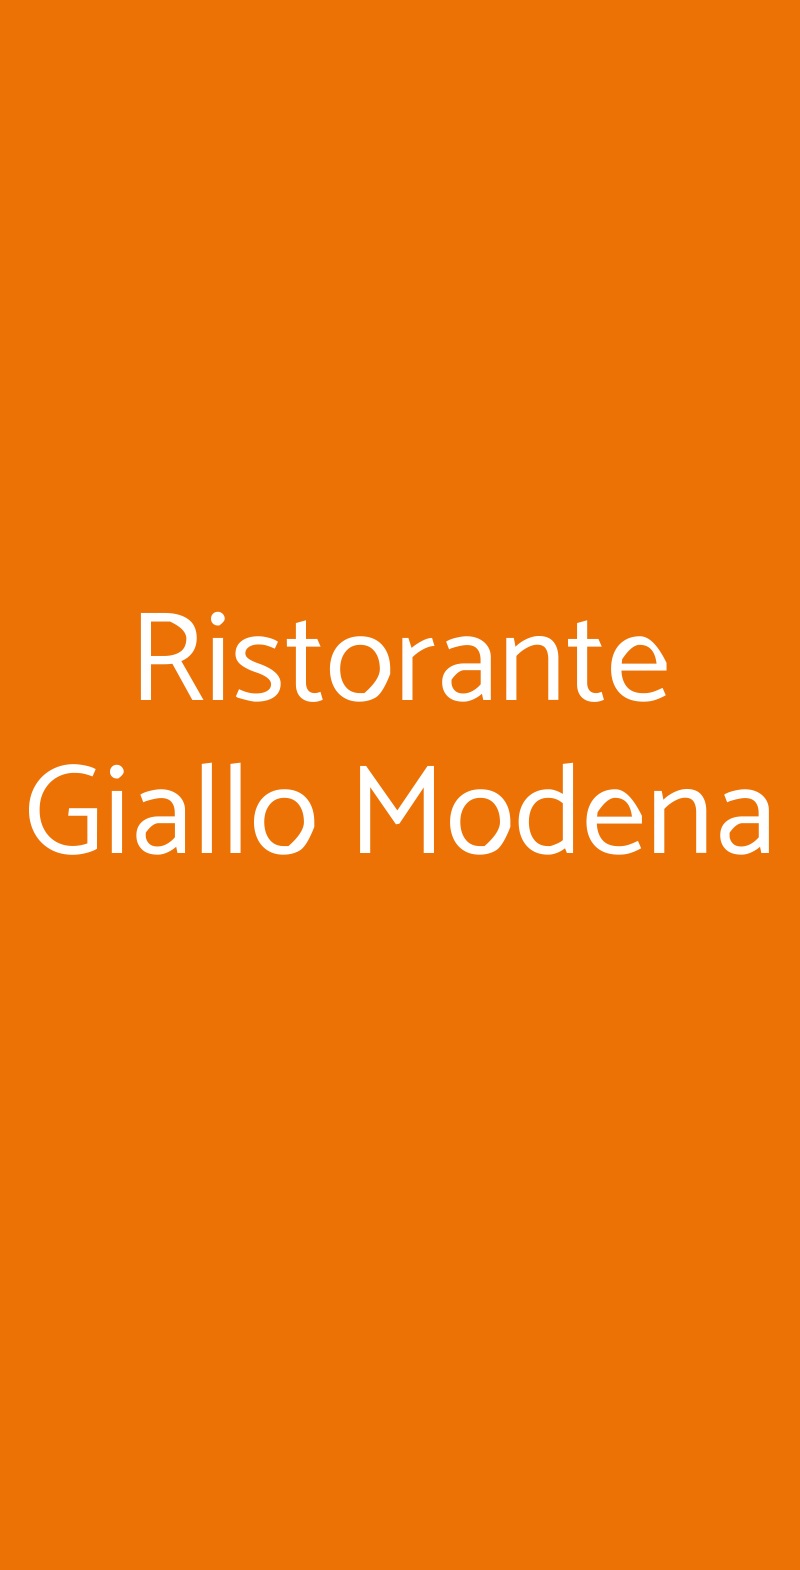 Ristorante Giallo Modena Modena menù 1 pagina